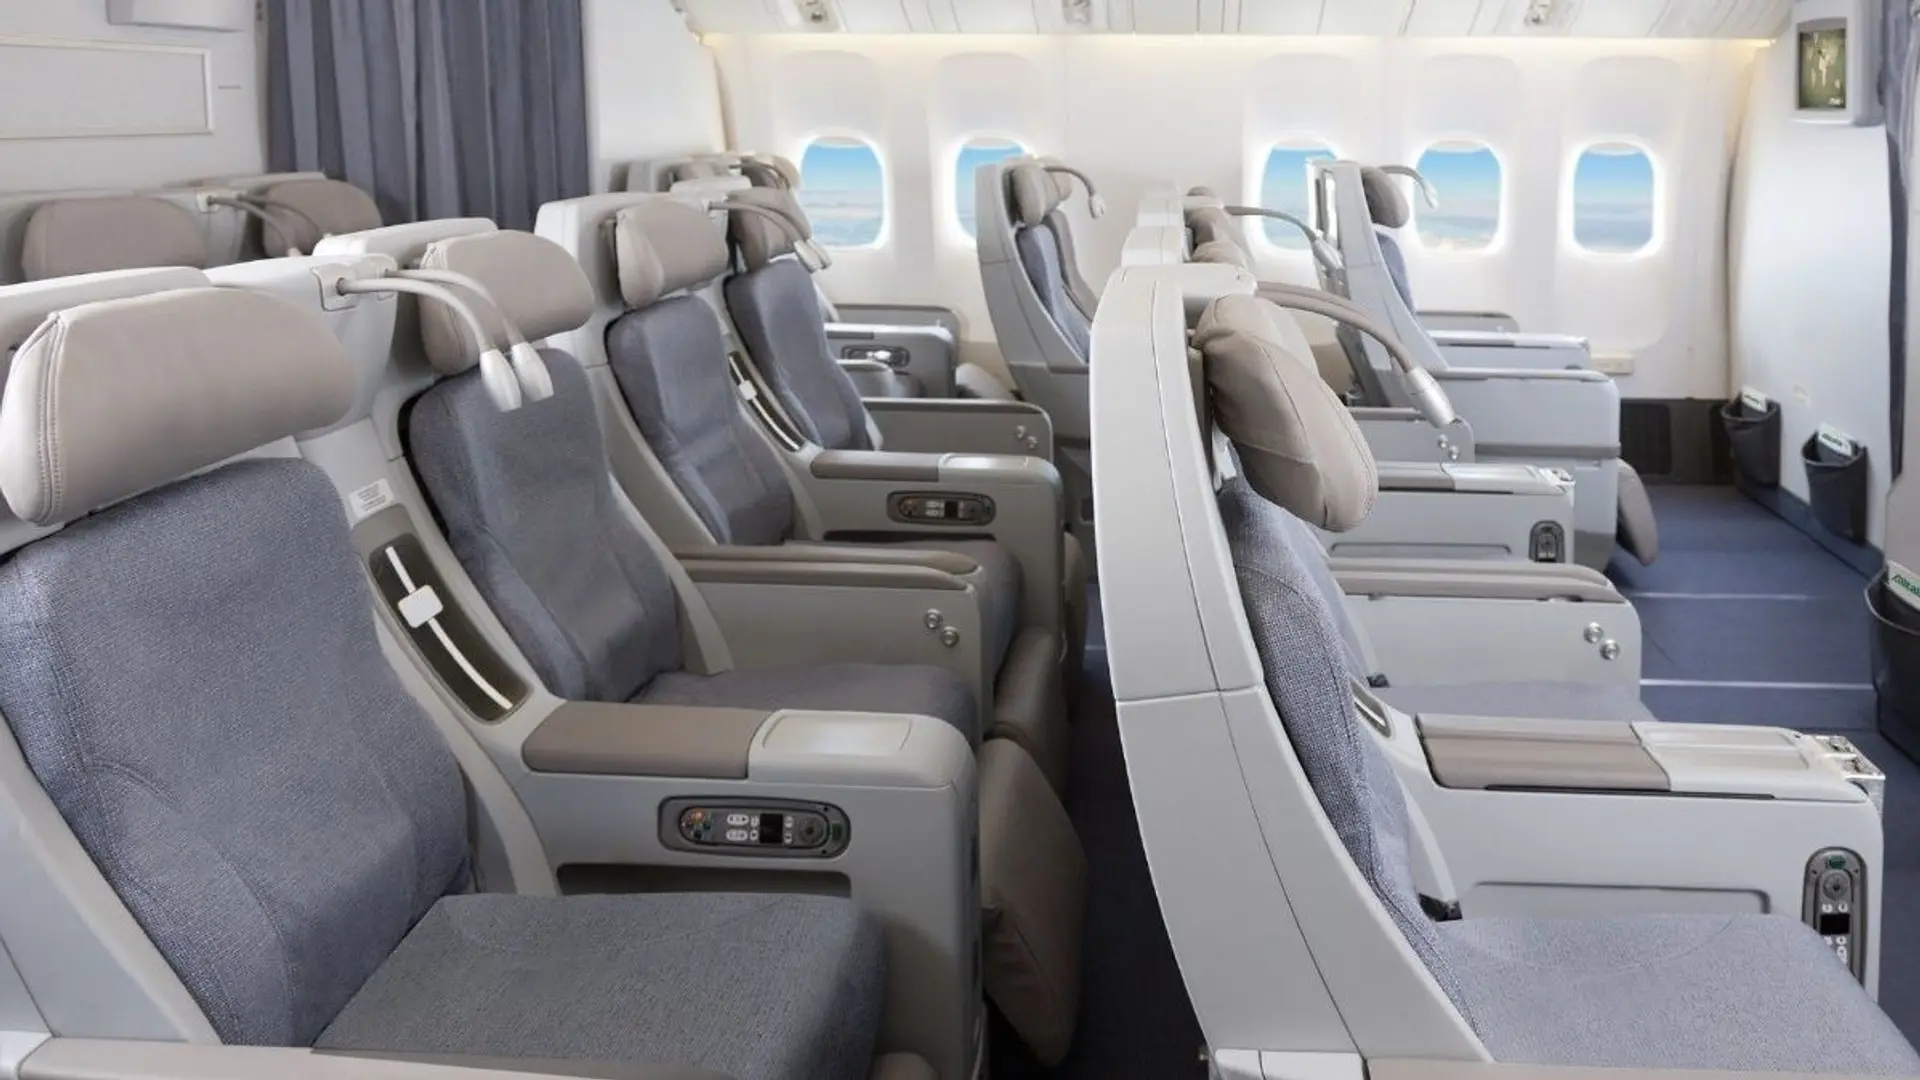 ITA Airways Premium Economy Seats